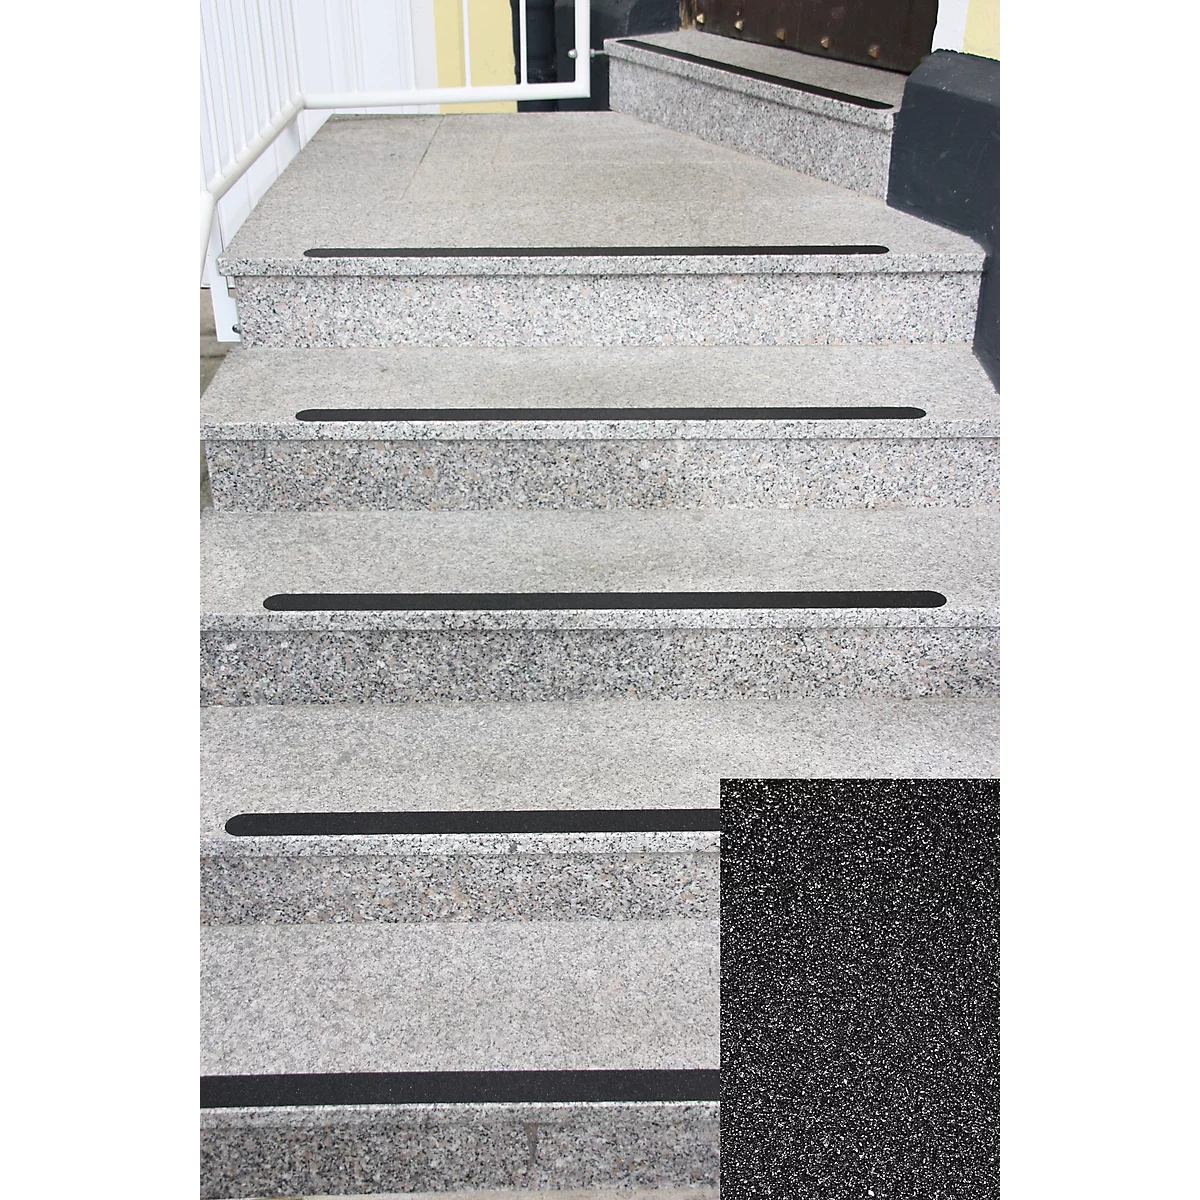 Antirutschbelag Safety-Floor Standard, selbstklebend, 50 mm x 25 m, schwarz